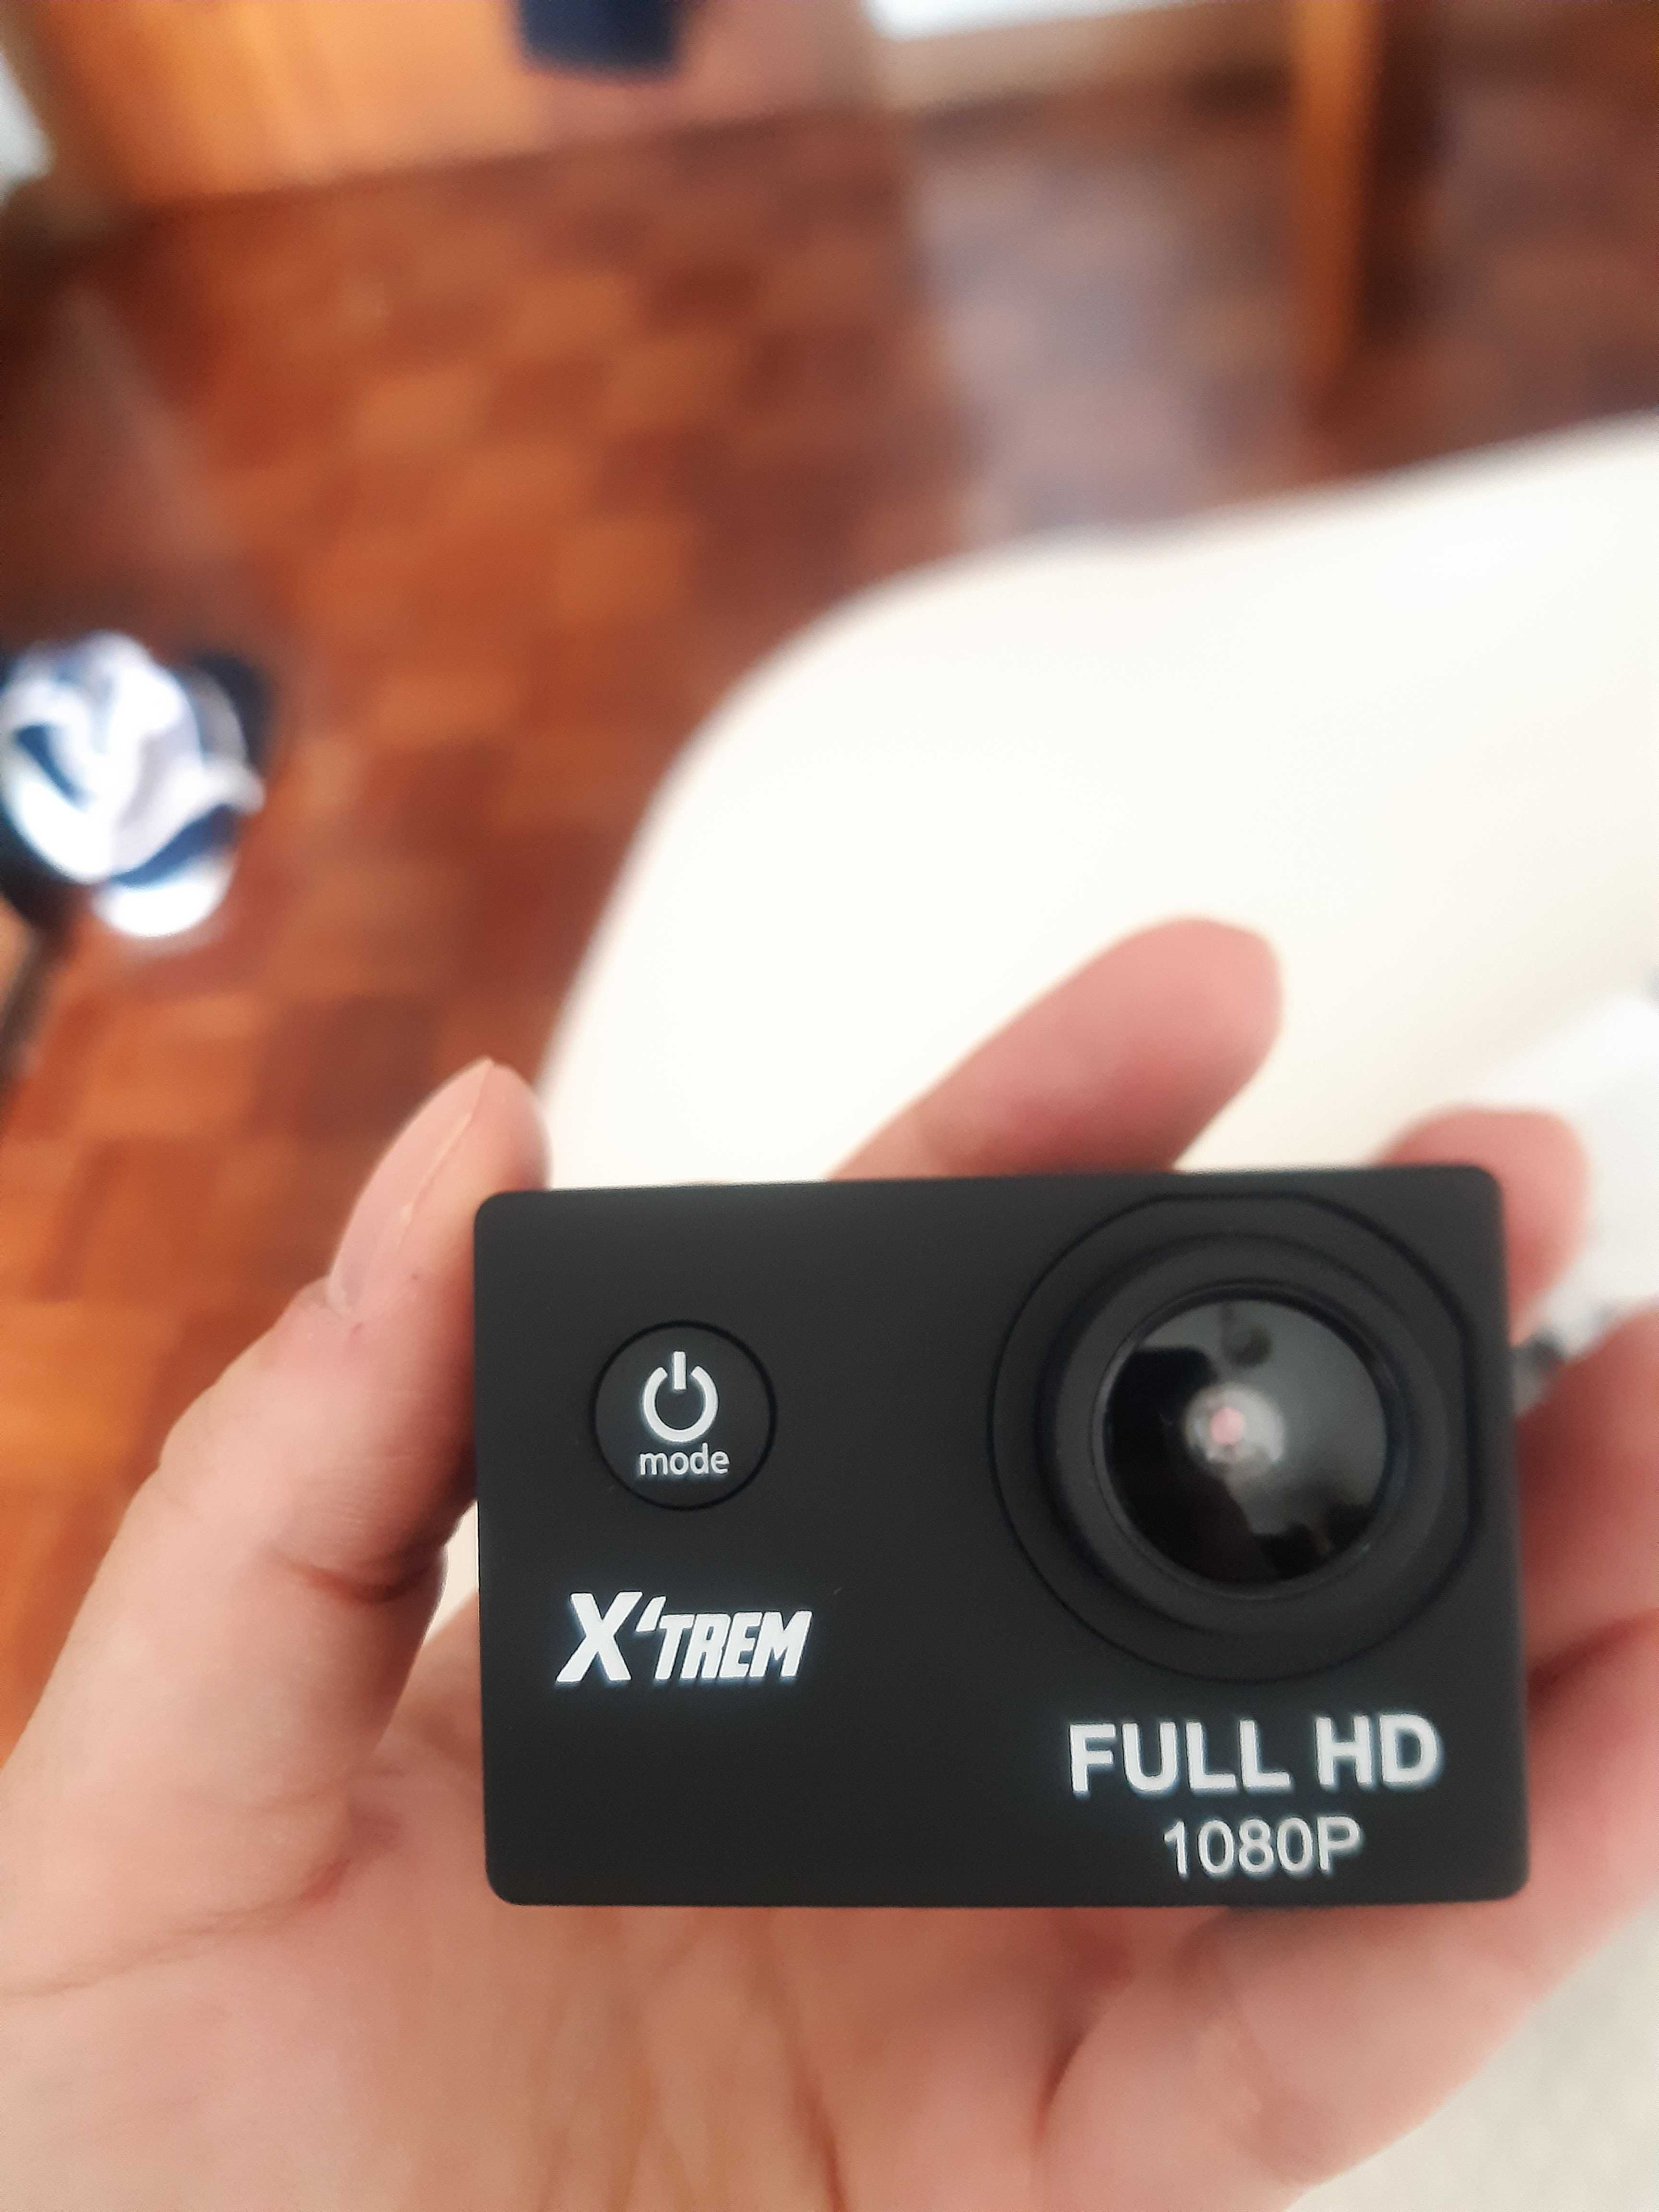 X'trem full hd 1080p